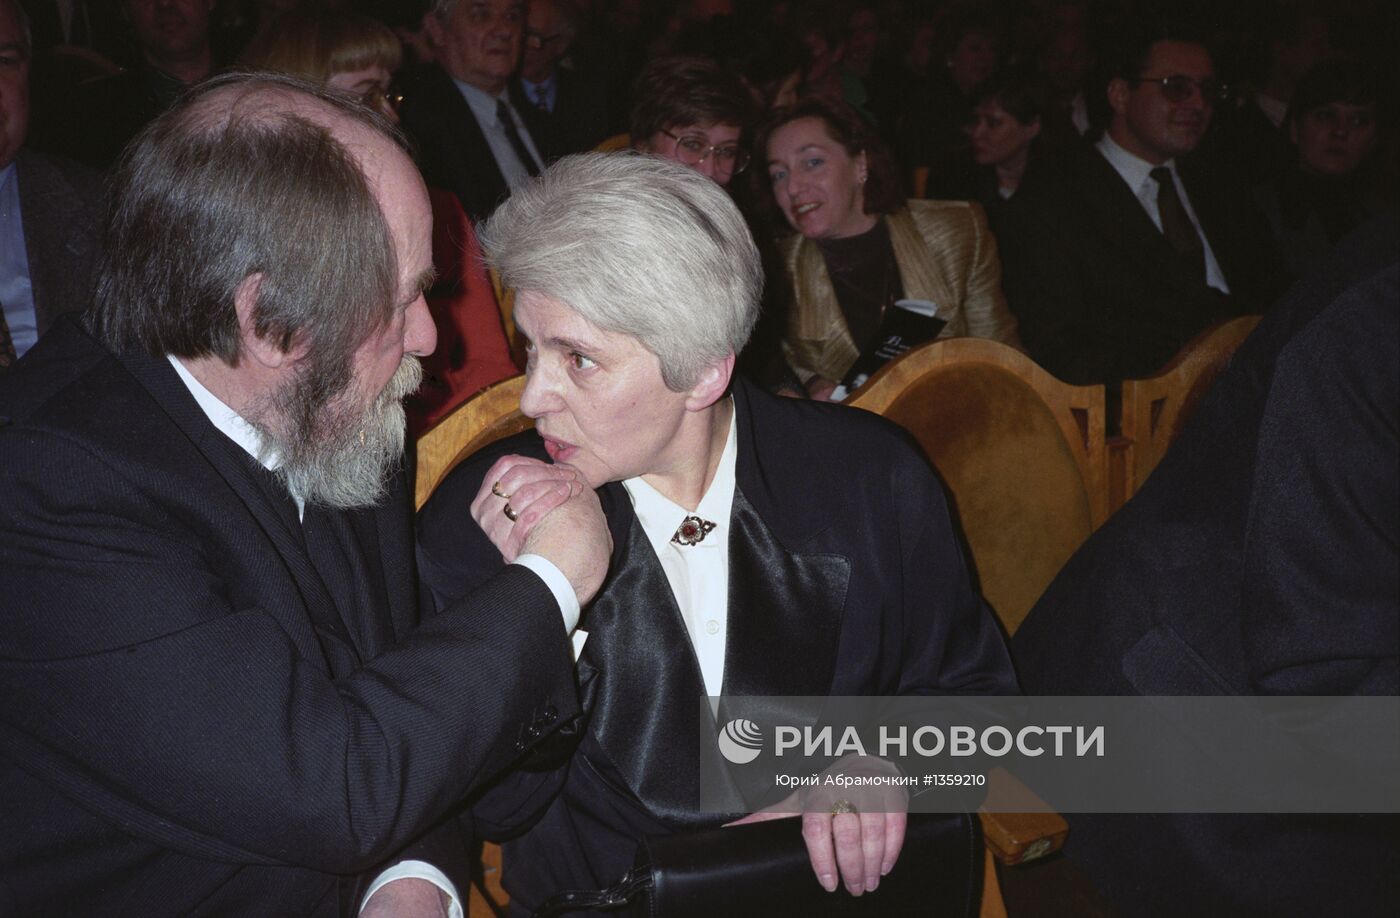 Писатель А.И. Солженицын с супругой Н.Д. Светловой